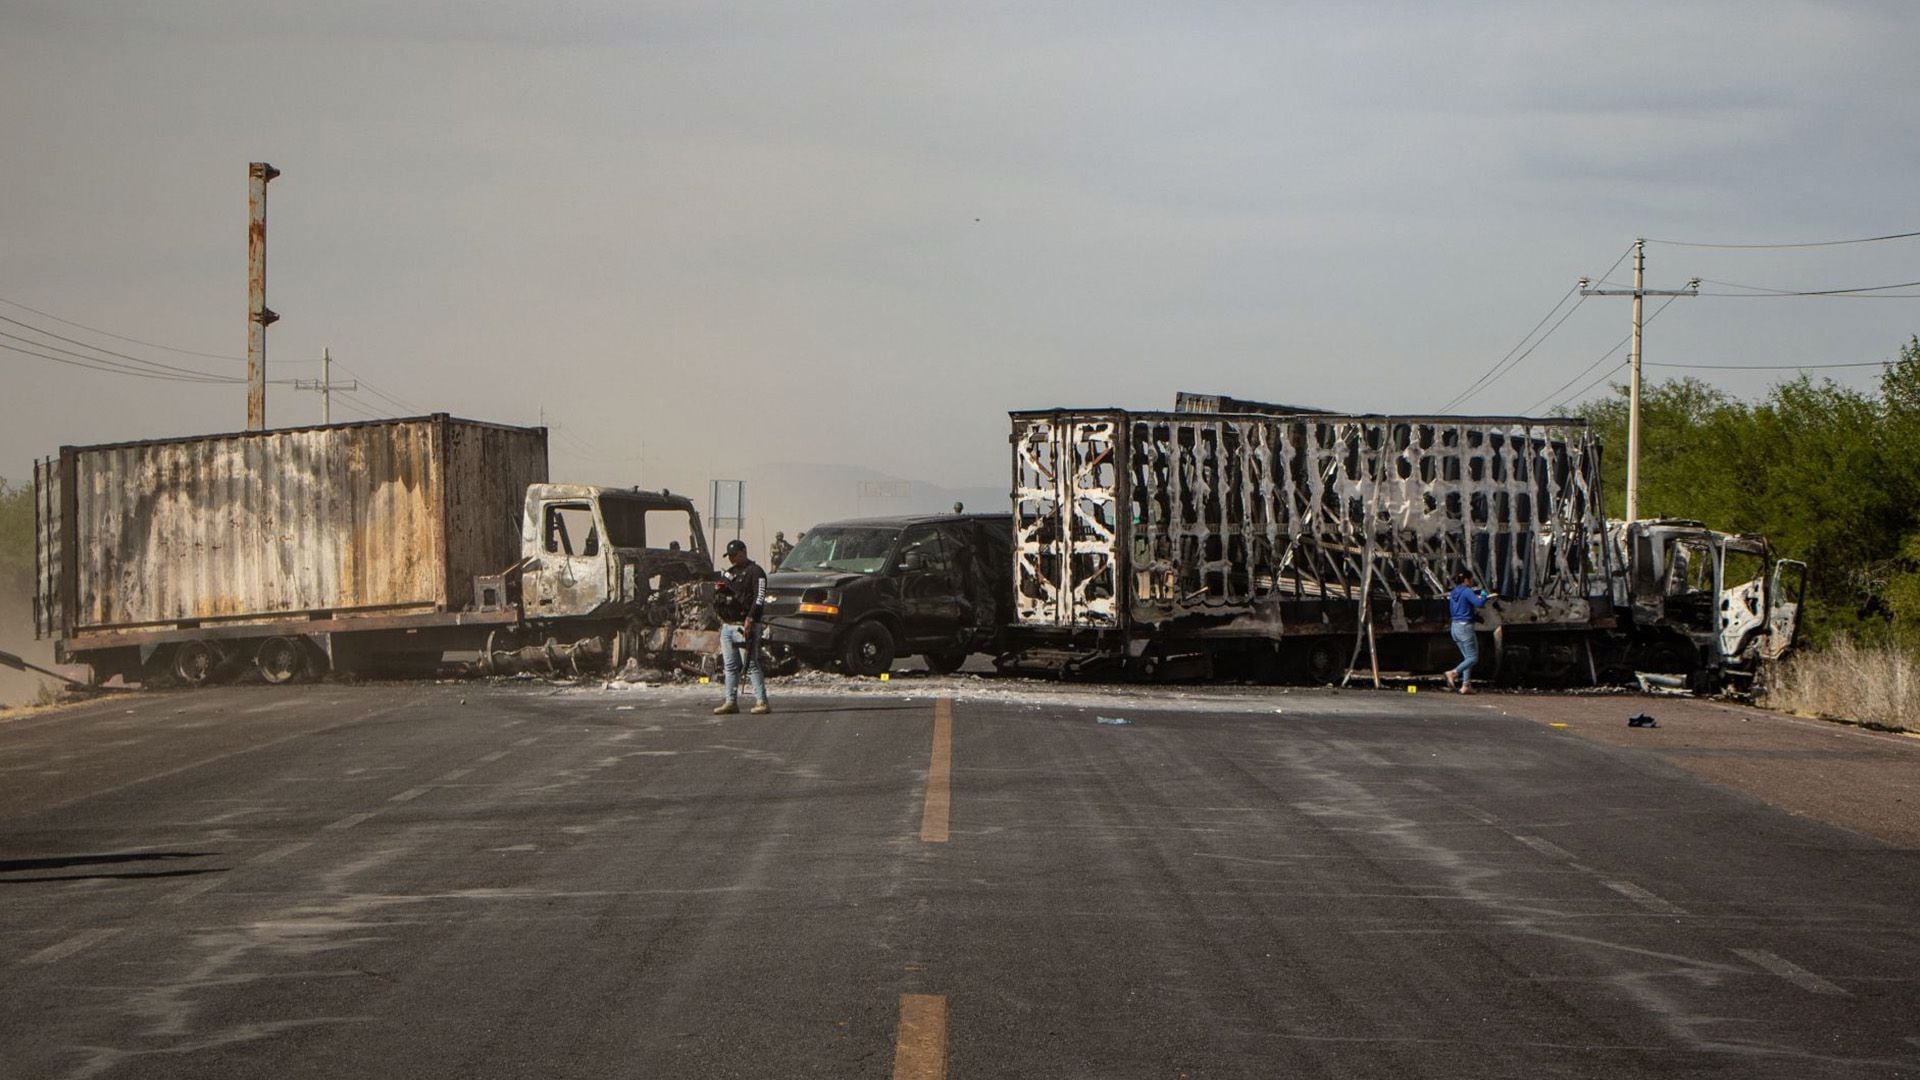 Tráileres incendiados en una carretera de Zacatecas para bloquear la circulación.

Fresnillo, Zacatecas, narcobloqueos, Cártel de Sinaloa